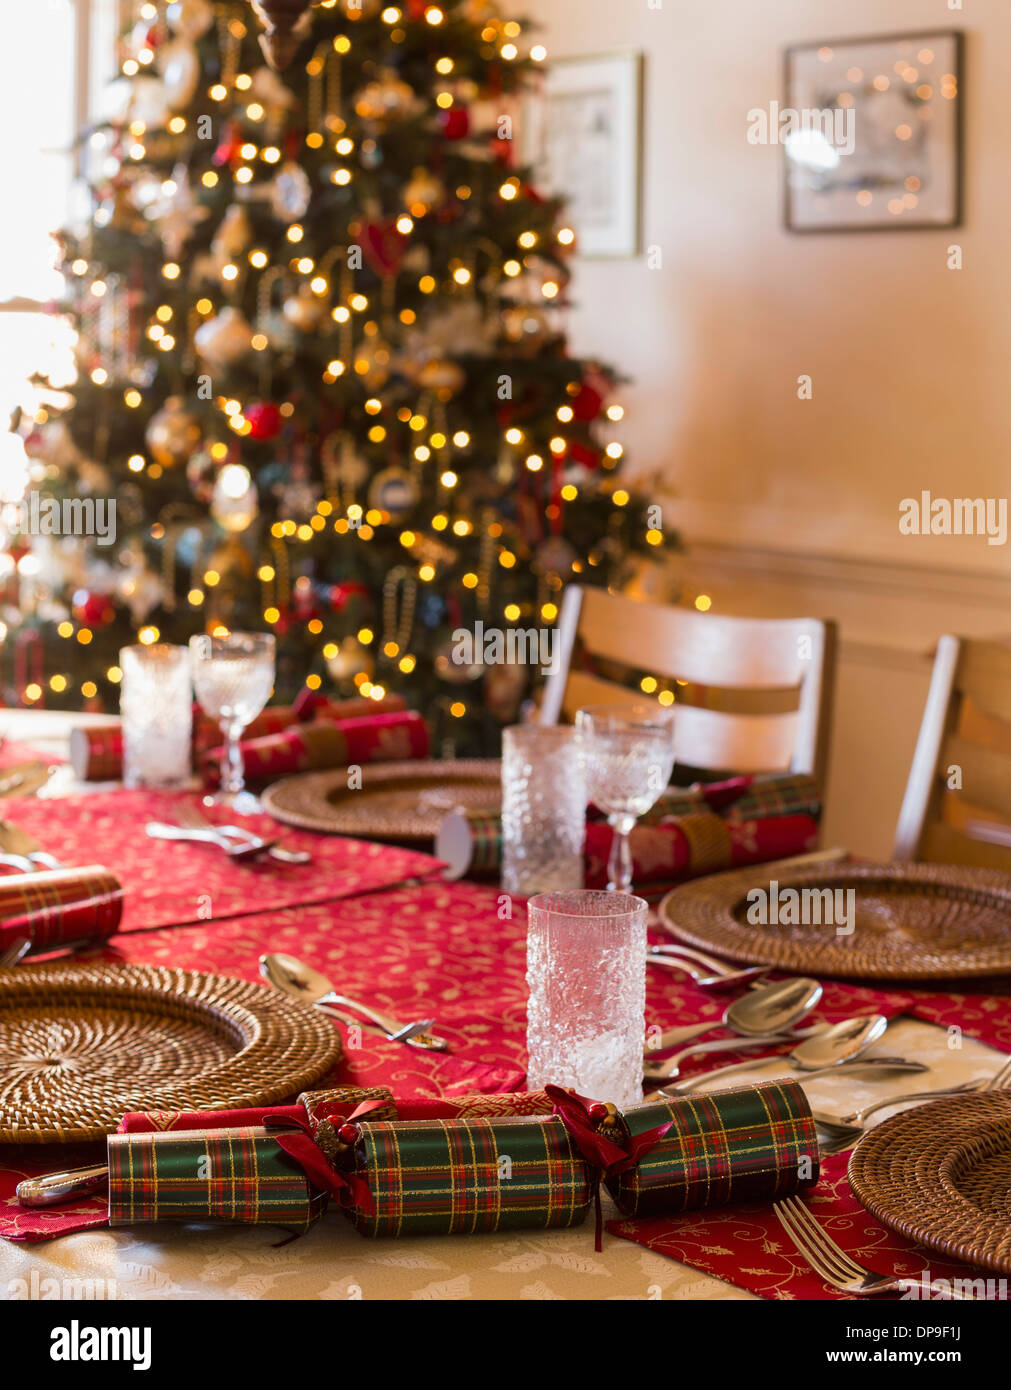 Table de Noël le jour de Noël place setting Banque D'Images